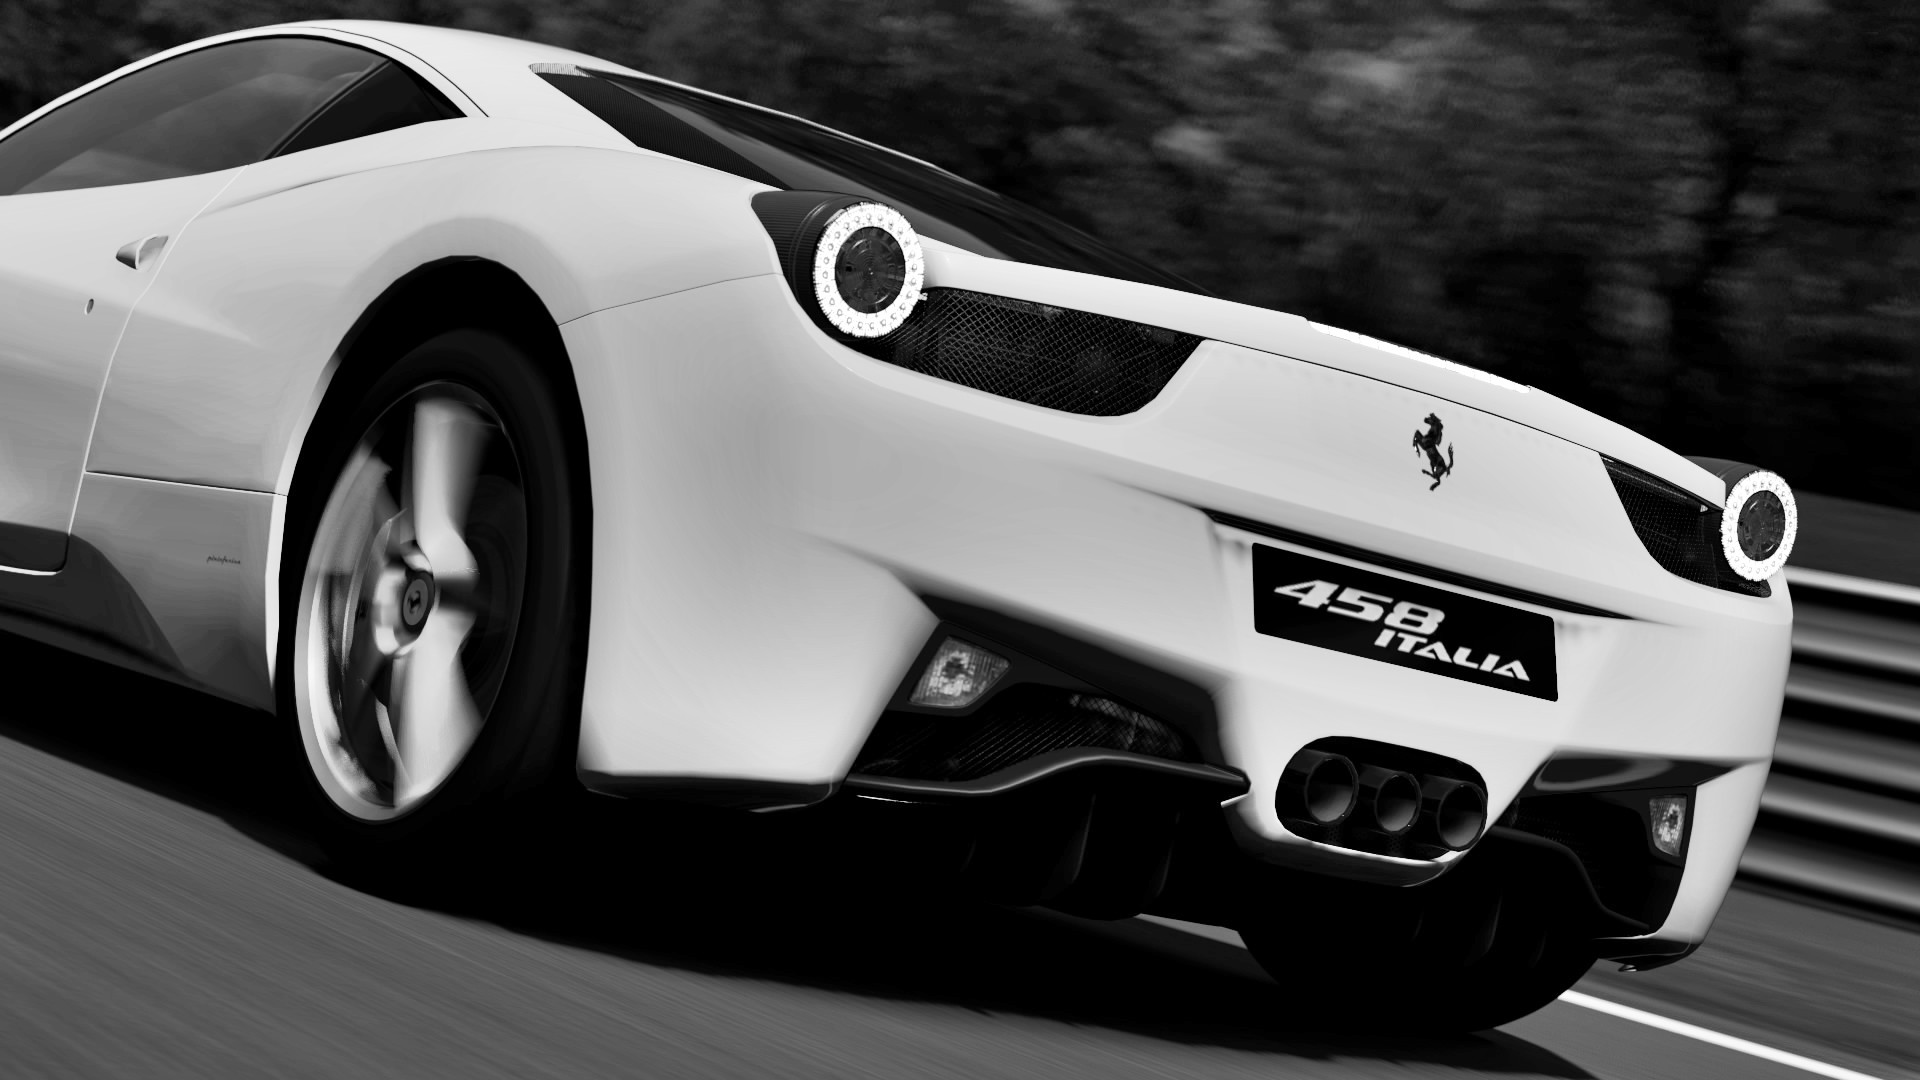 cars, Ferrari, grayscale, Gran Turismo, monochrome, vehicles, Ferrari 458 Italia, Gran Turismo 5 - desktop wallpaper